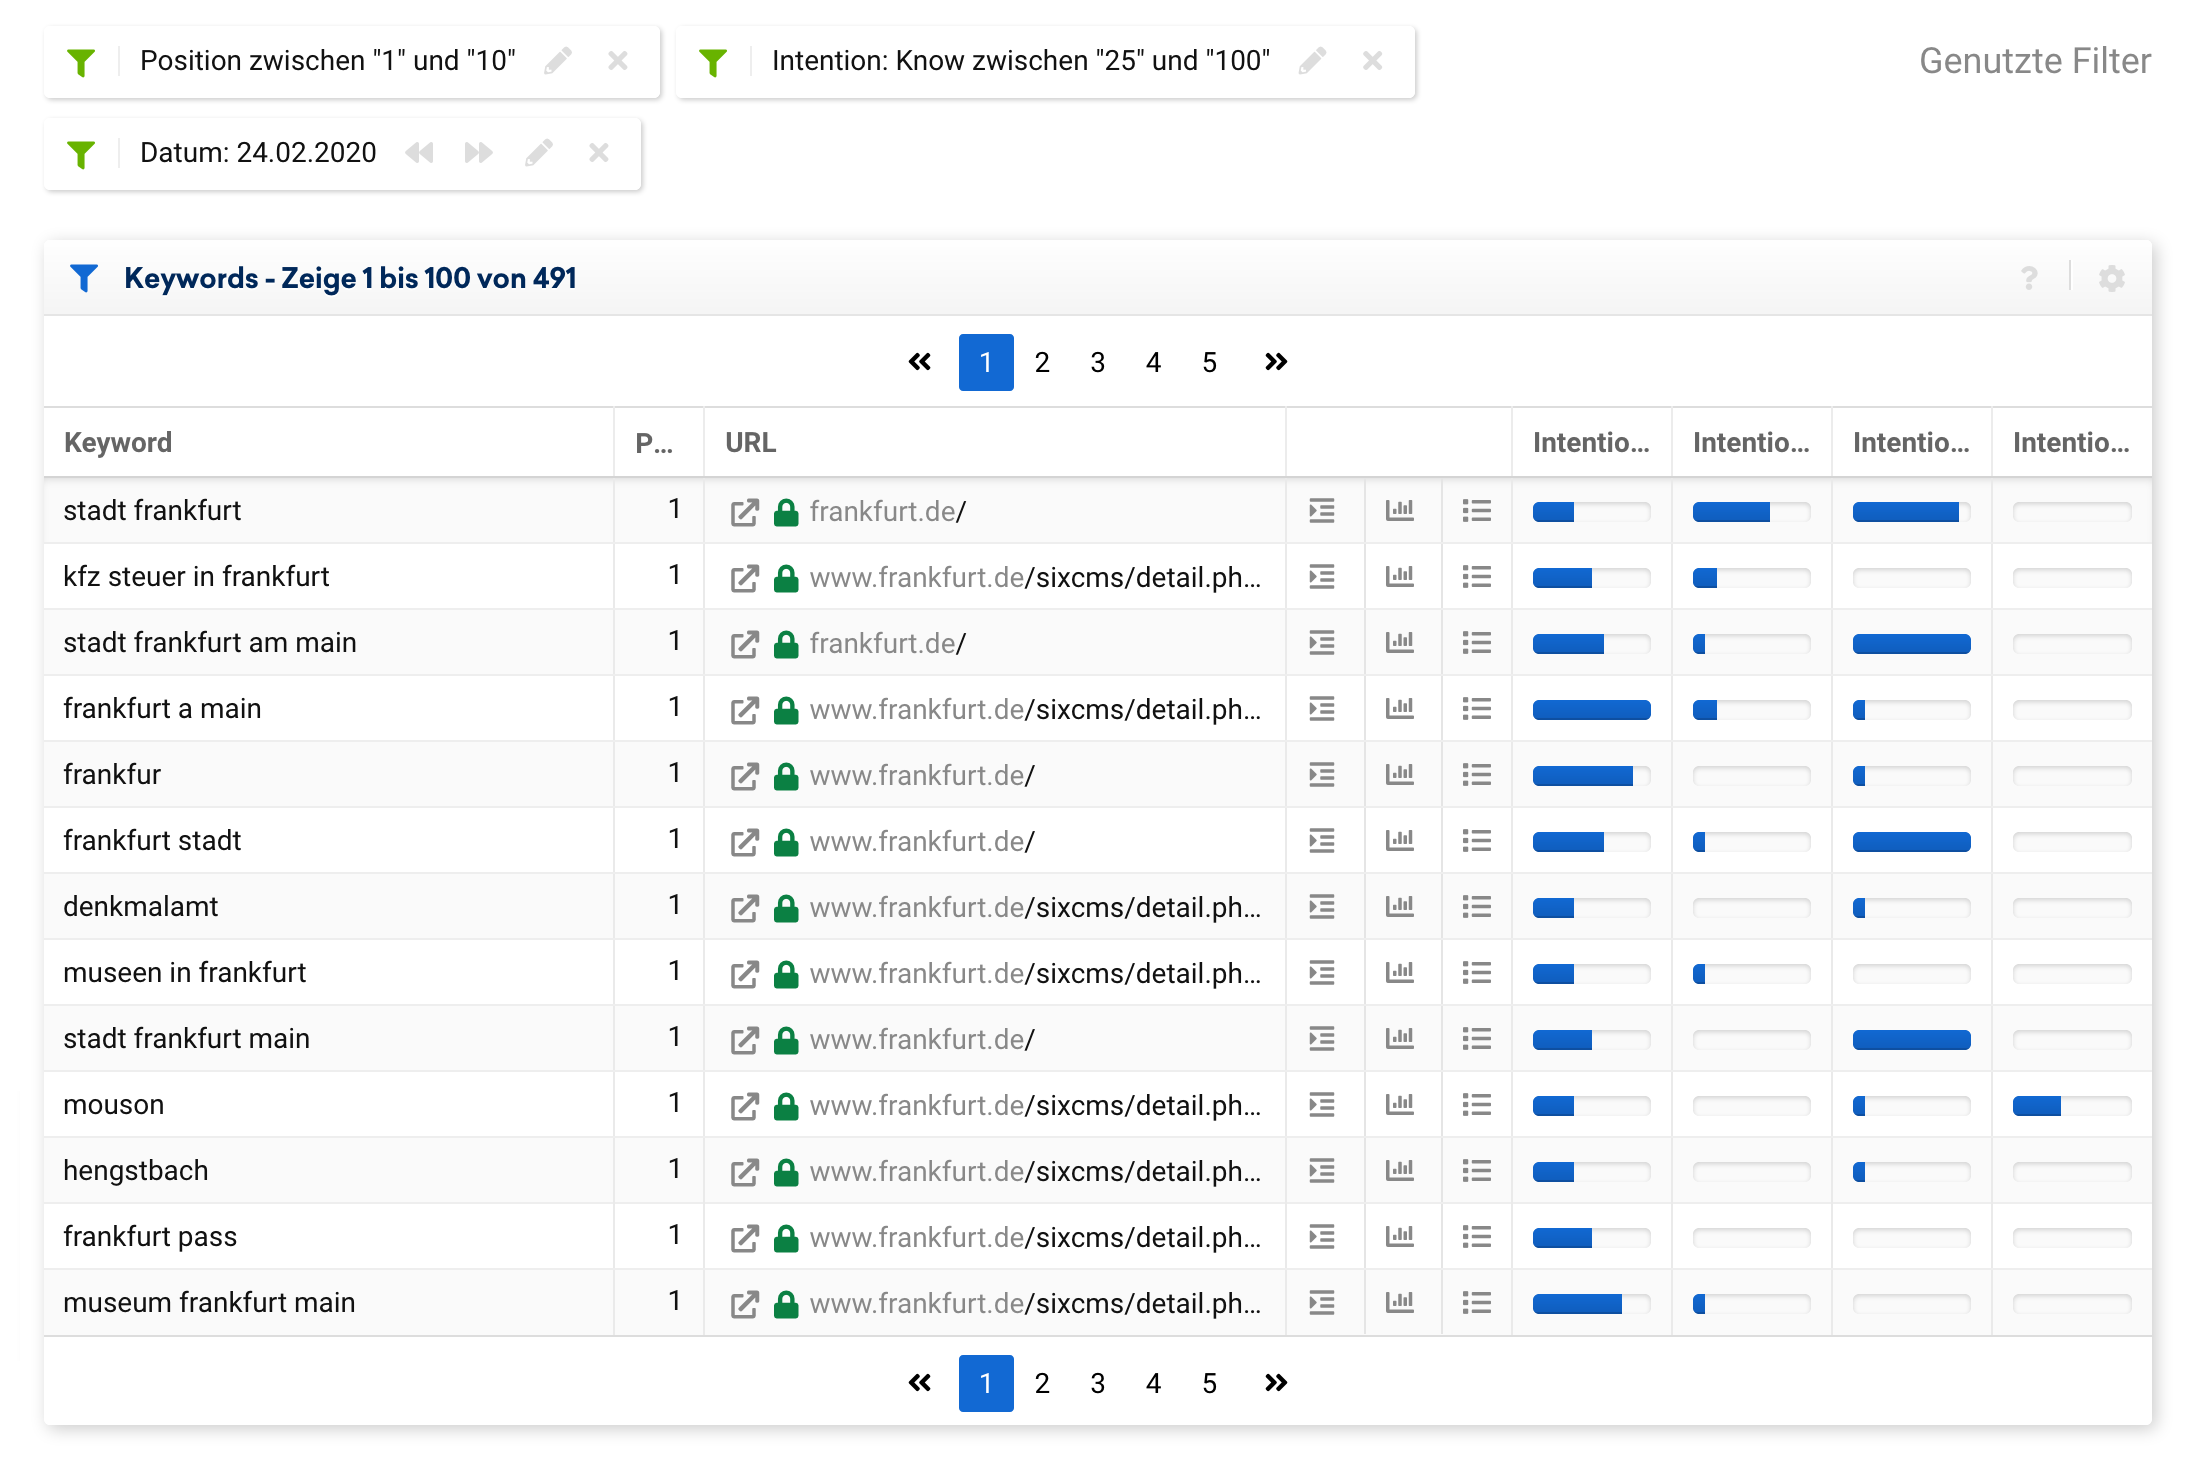 Keyword Tabelle für die Top-10 Rankings der Domain frankfurt.de zum Datenpunkt 24.02.2020. Ein weiterer Filter wurde gesetzt um nur Ergebnisse zu zeigen, bei denen die "Know"-Suchintention mit mindestens 25 von 100 Punkten festgestellt wurde. Hier werden 491 Keywords gefunden.